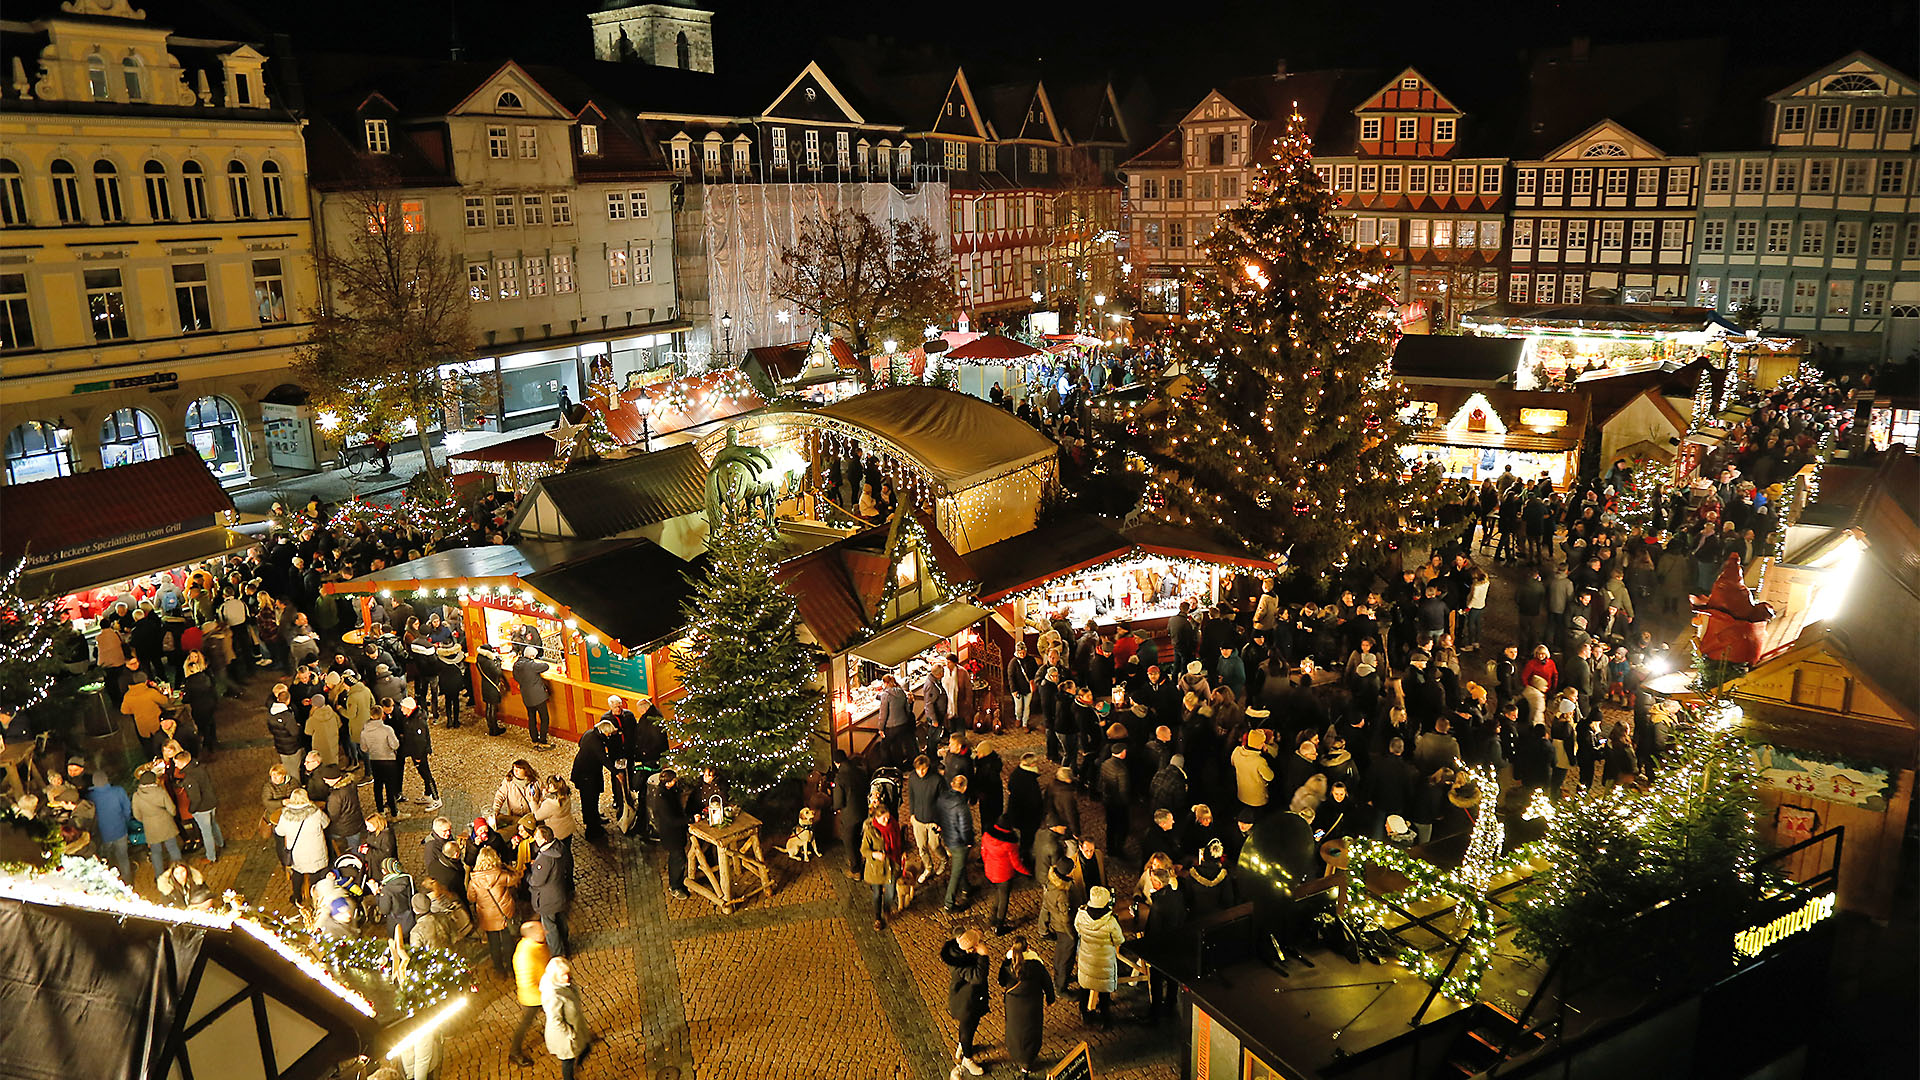 Blick auf den Weihnachtsmarkt mit dne beleuchteten Verkaufsständen, einer großen beleuchteten Tanne und vielen Besucherinnen und Besuchern.